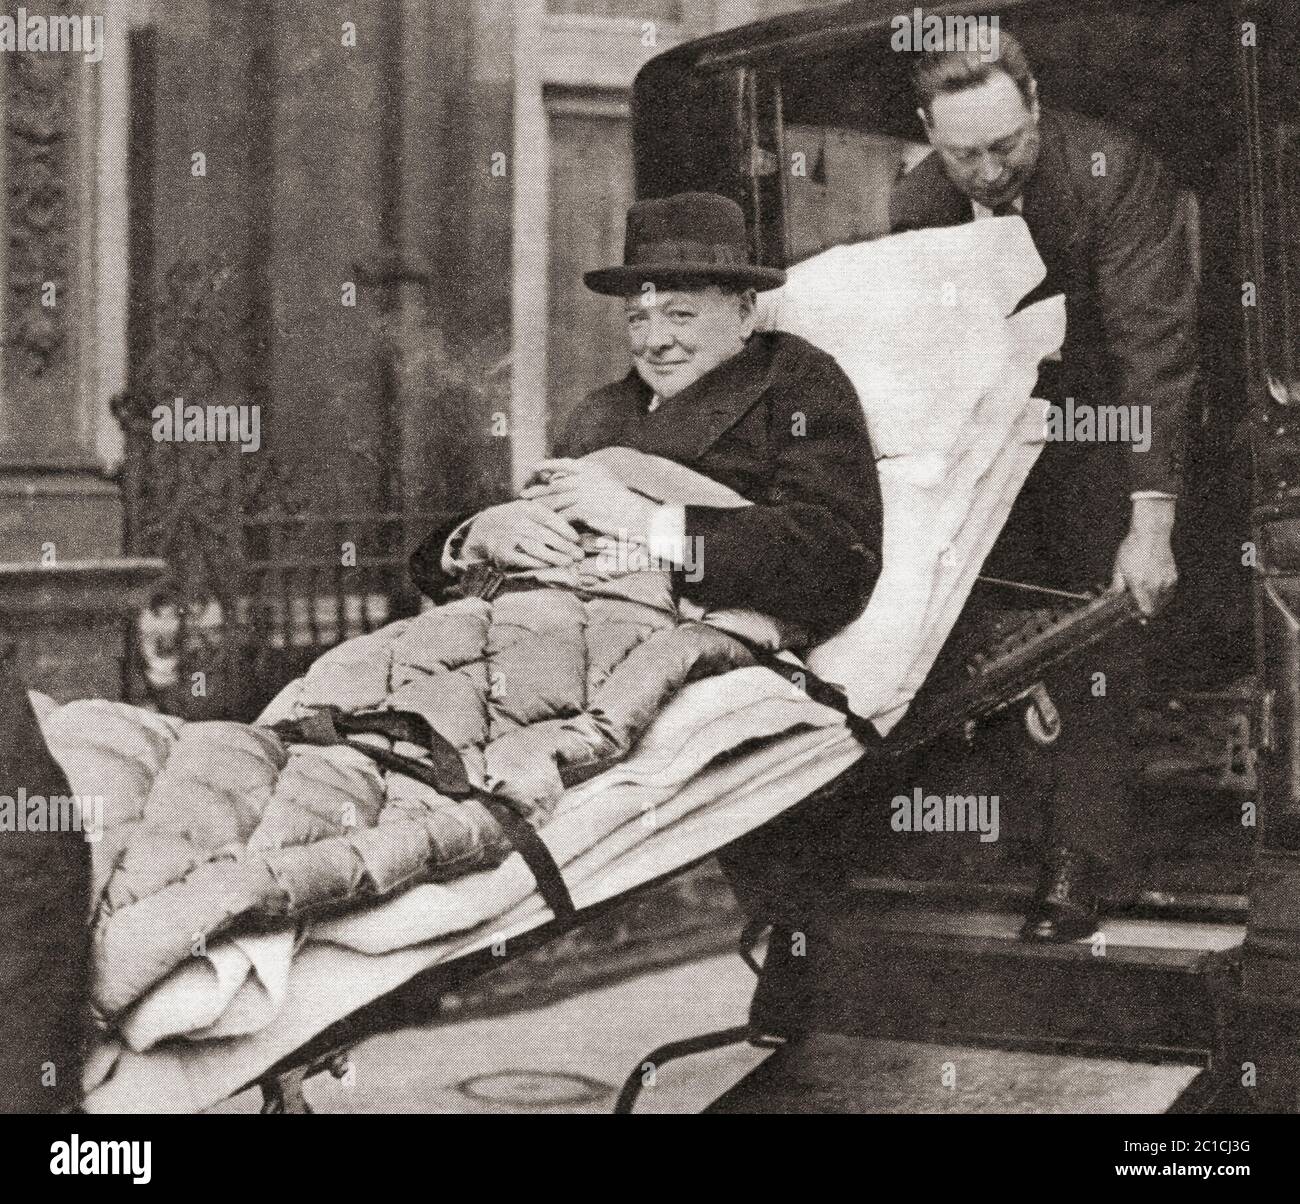 Sir Winston Churchill, vu ici en 1932, emmené à son appartement de Londres après avoir subi une attaque de paratyphoïde. Sir Winston Leonard Spencer-Churchill, 1874 – 1965. Politicien britannique, officier de l'armée, écrivain et deux fois Premier ministre du Royaume-Uni. Banque D'Images